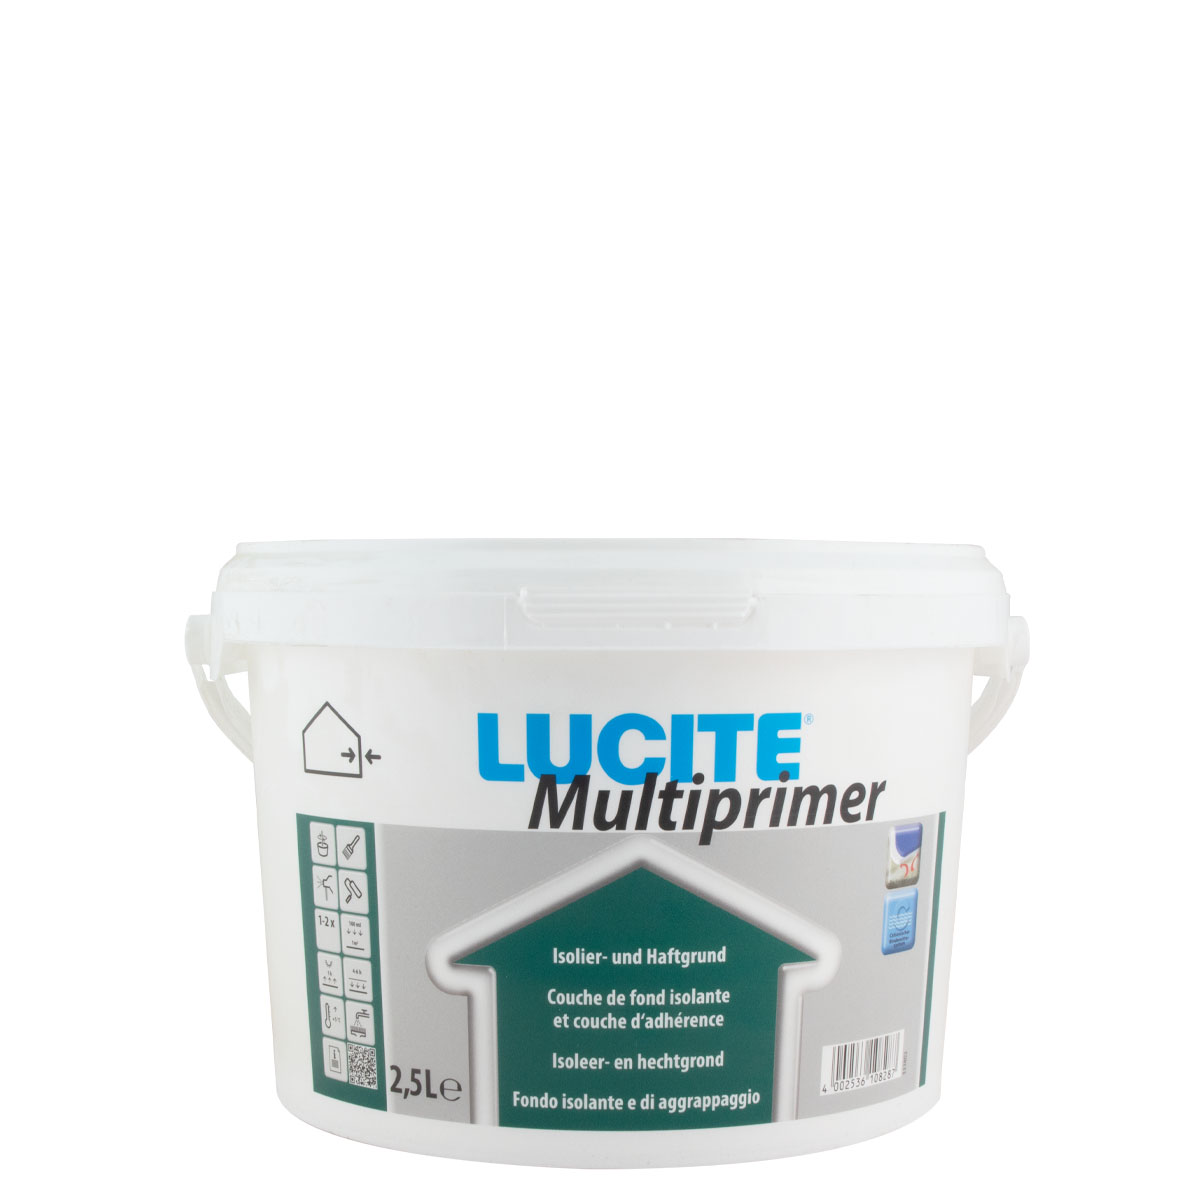 Lucite Multiprimer 2,5L weiß Isolier- und Haftgrund